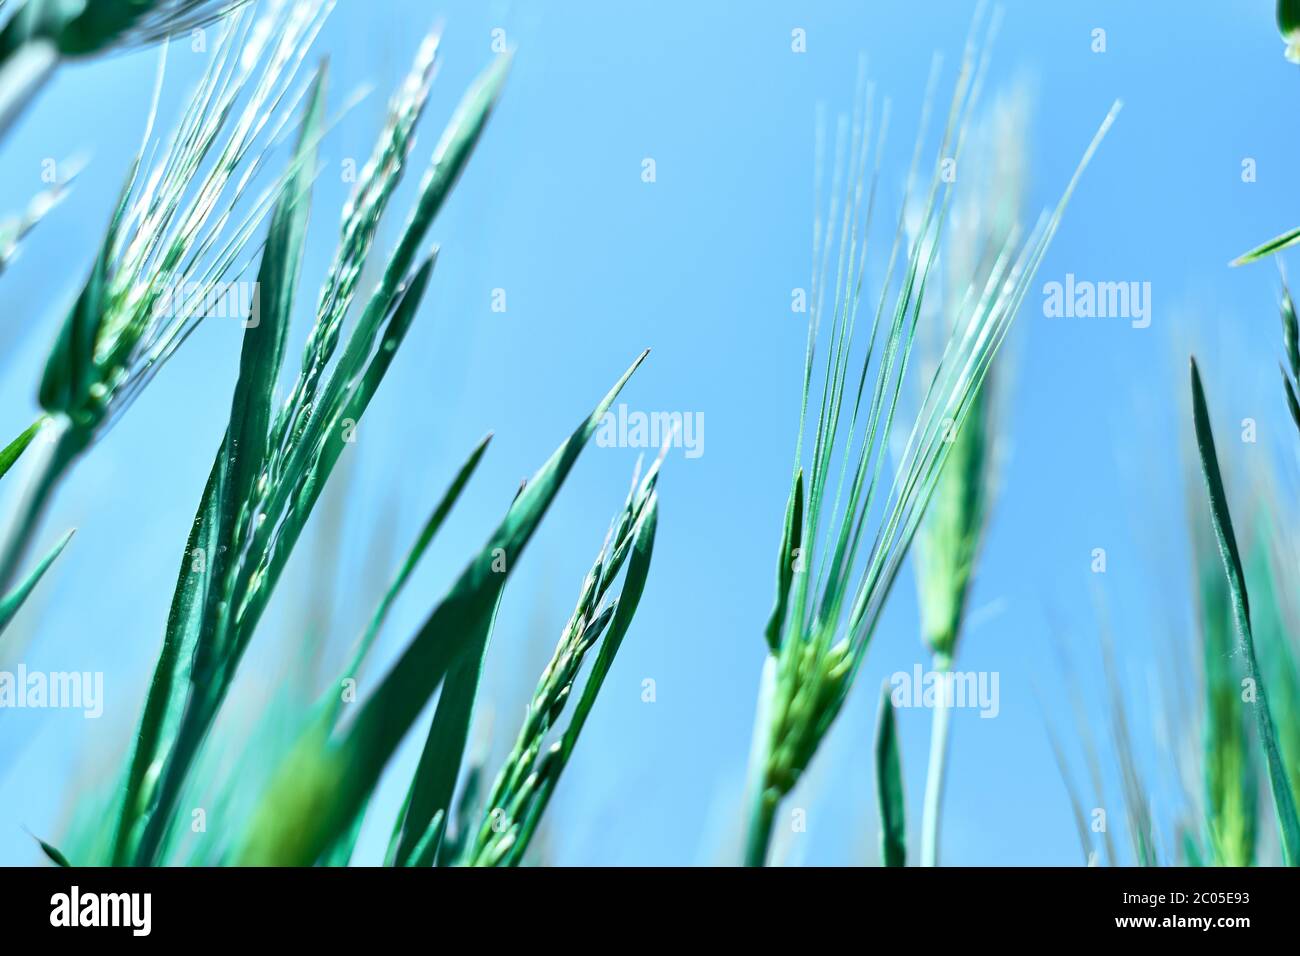 Frisches grünes Getreidefeld mit blauem Himmel bei Frühlingssonnenstrahlen. Gerstenkorn wird für Mehl, Brot, Bier, einige Whiskeys, einige Wodkas und Tierfutter verwendet. Stockfoto